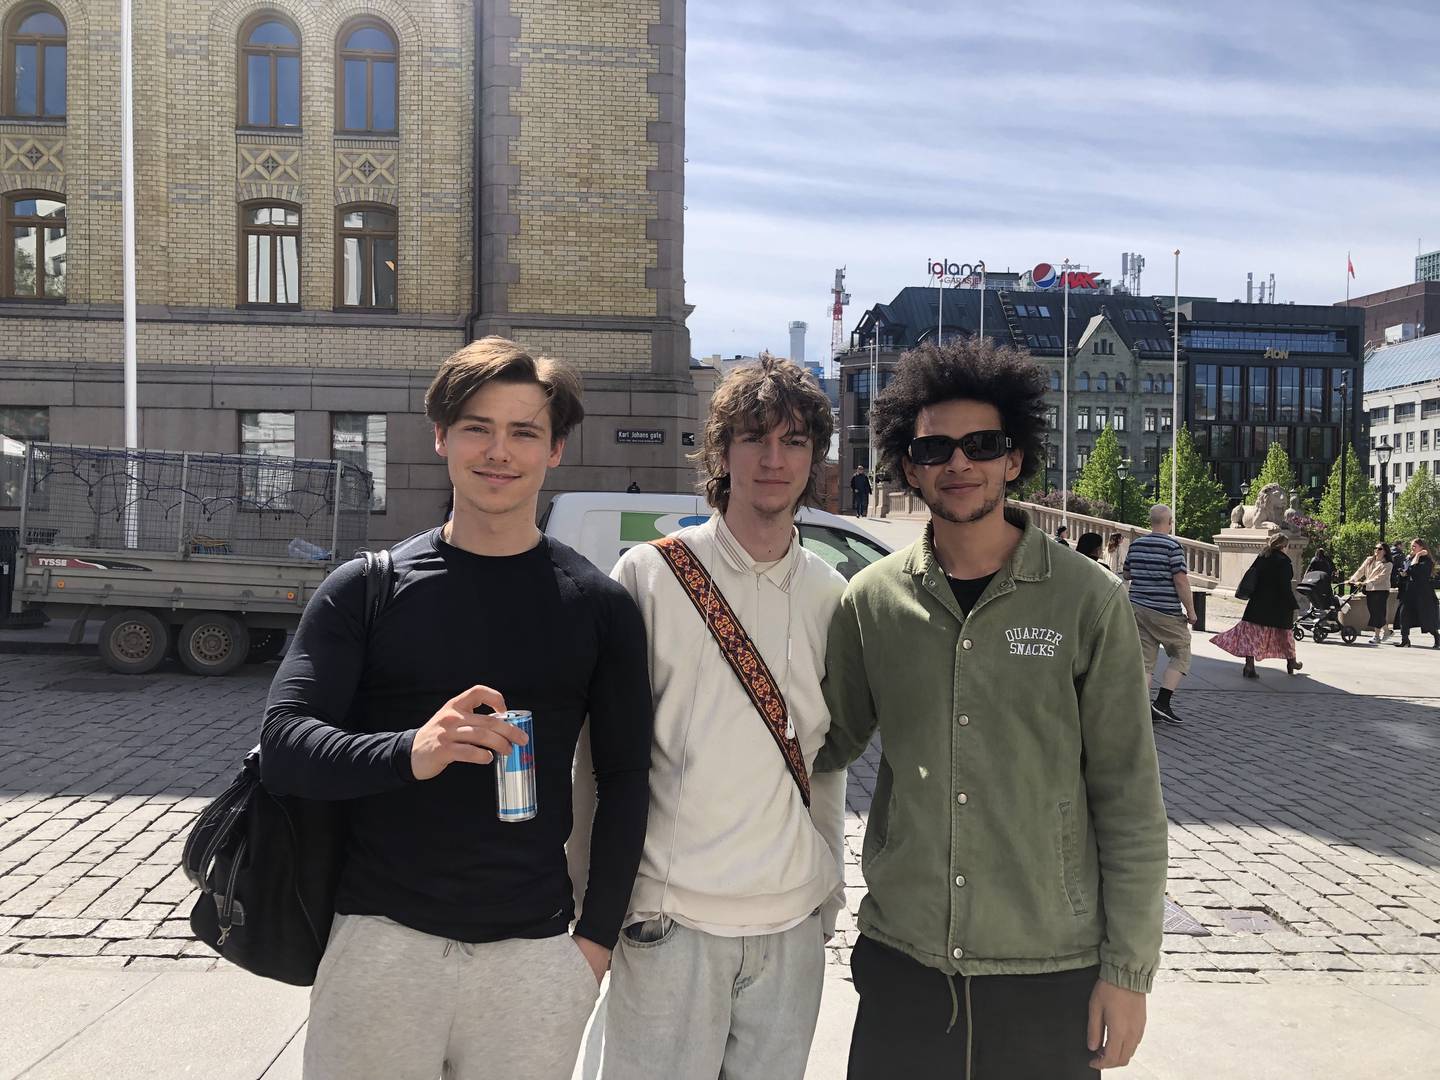 Fra venstre: Andreas Meyer (21), Elias Bloo (21) og Adam Urio (21).